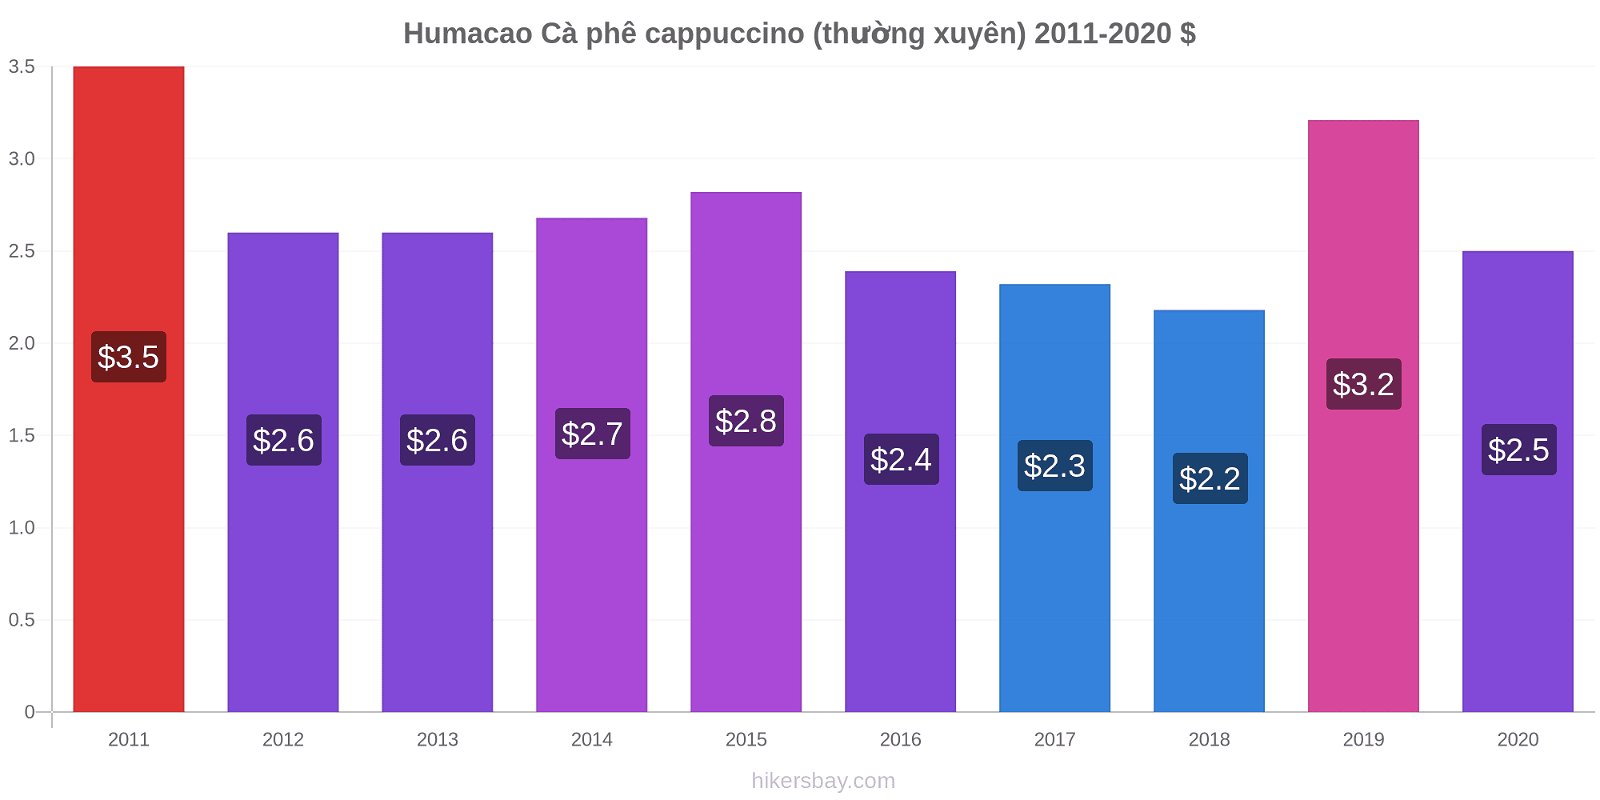 Humacao thay đổi giá Cà phê cappuccino (thường xuyên) hikersbay.com